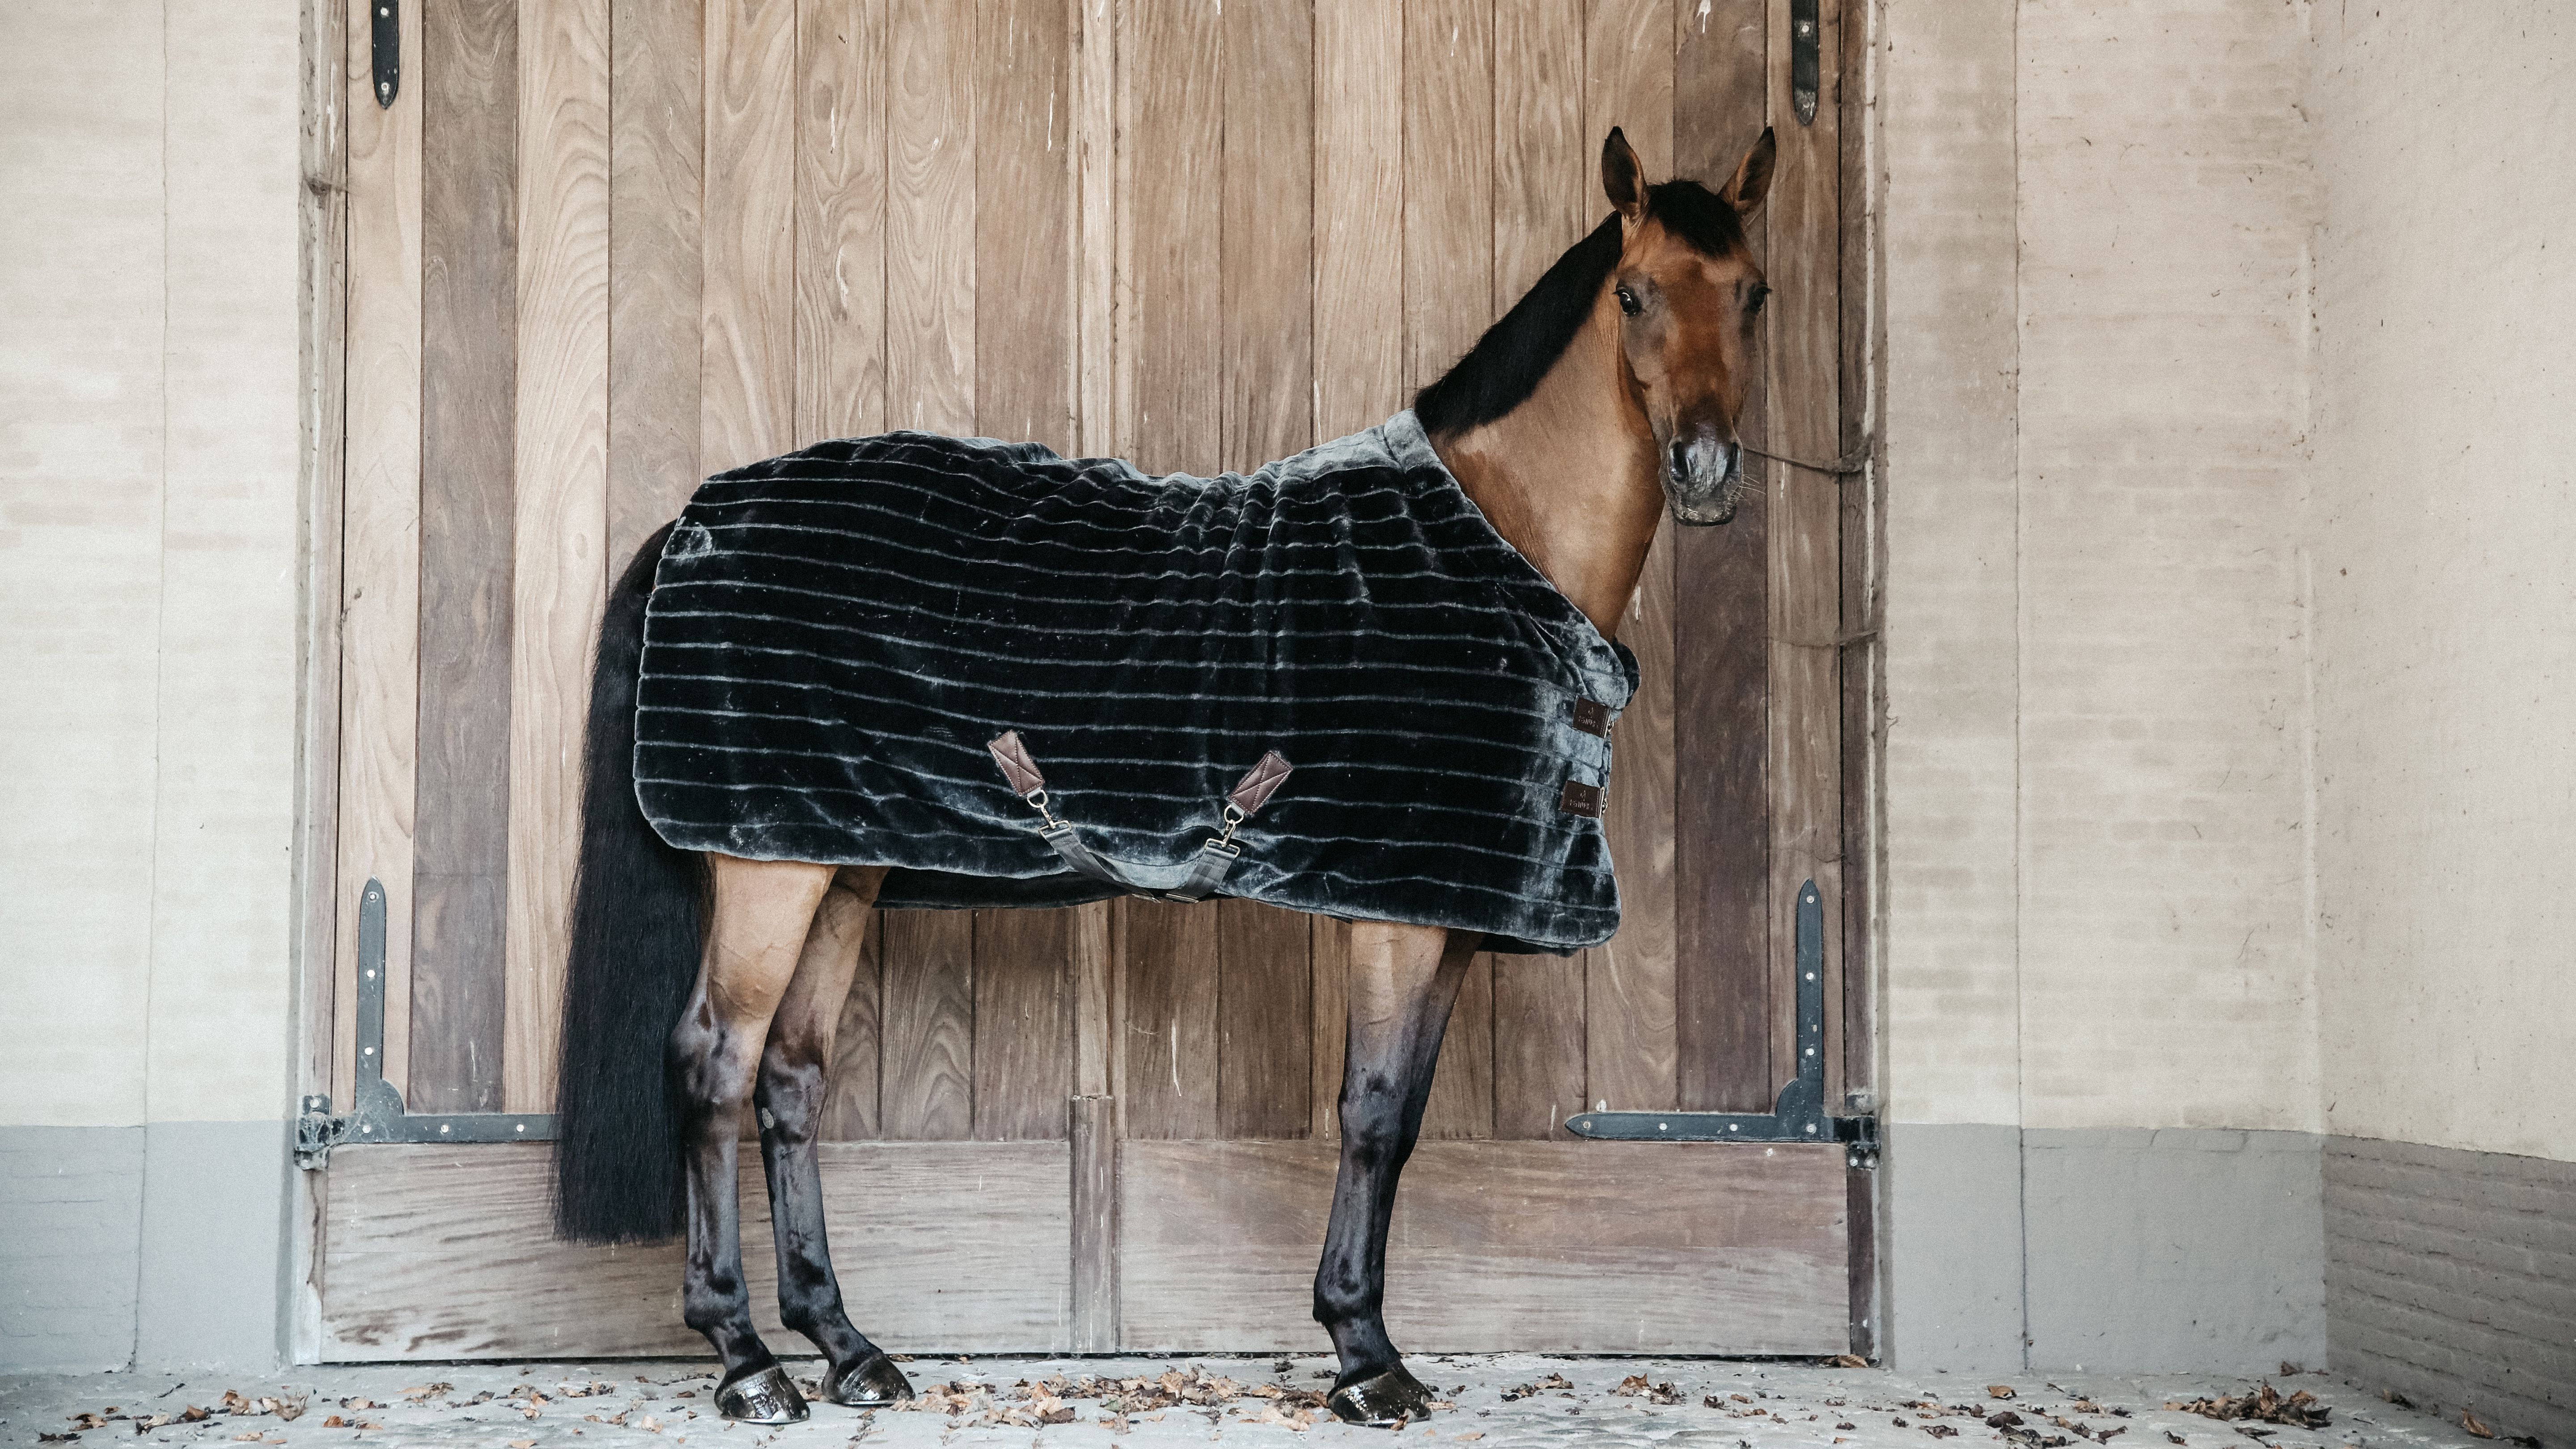 Chaise longue Tablet Seraph Help, welk deken moet mijn paard op? | Emmers Academy